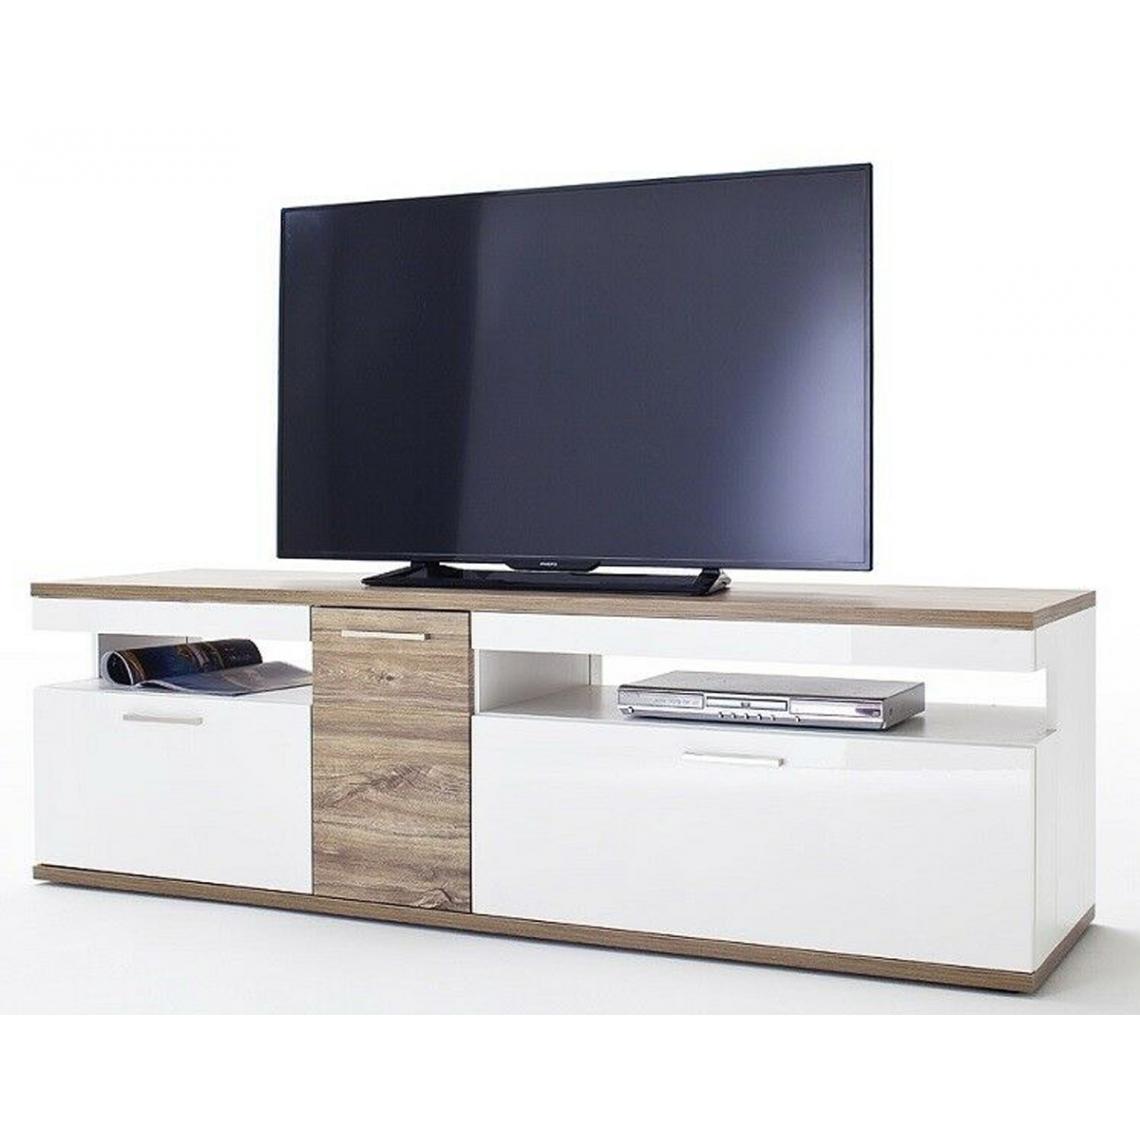 Pegane - Meuble TV coloris blanc brillant et chêne sterling - Longueur 180 x Hauteur 55 x Profondeur 50 cm - Meubles TV, Hi-Fi